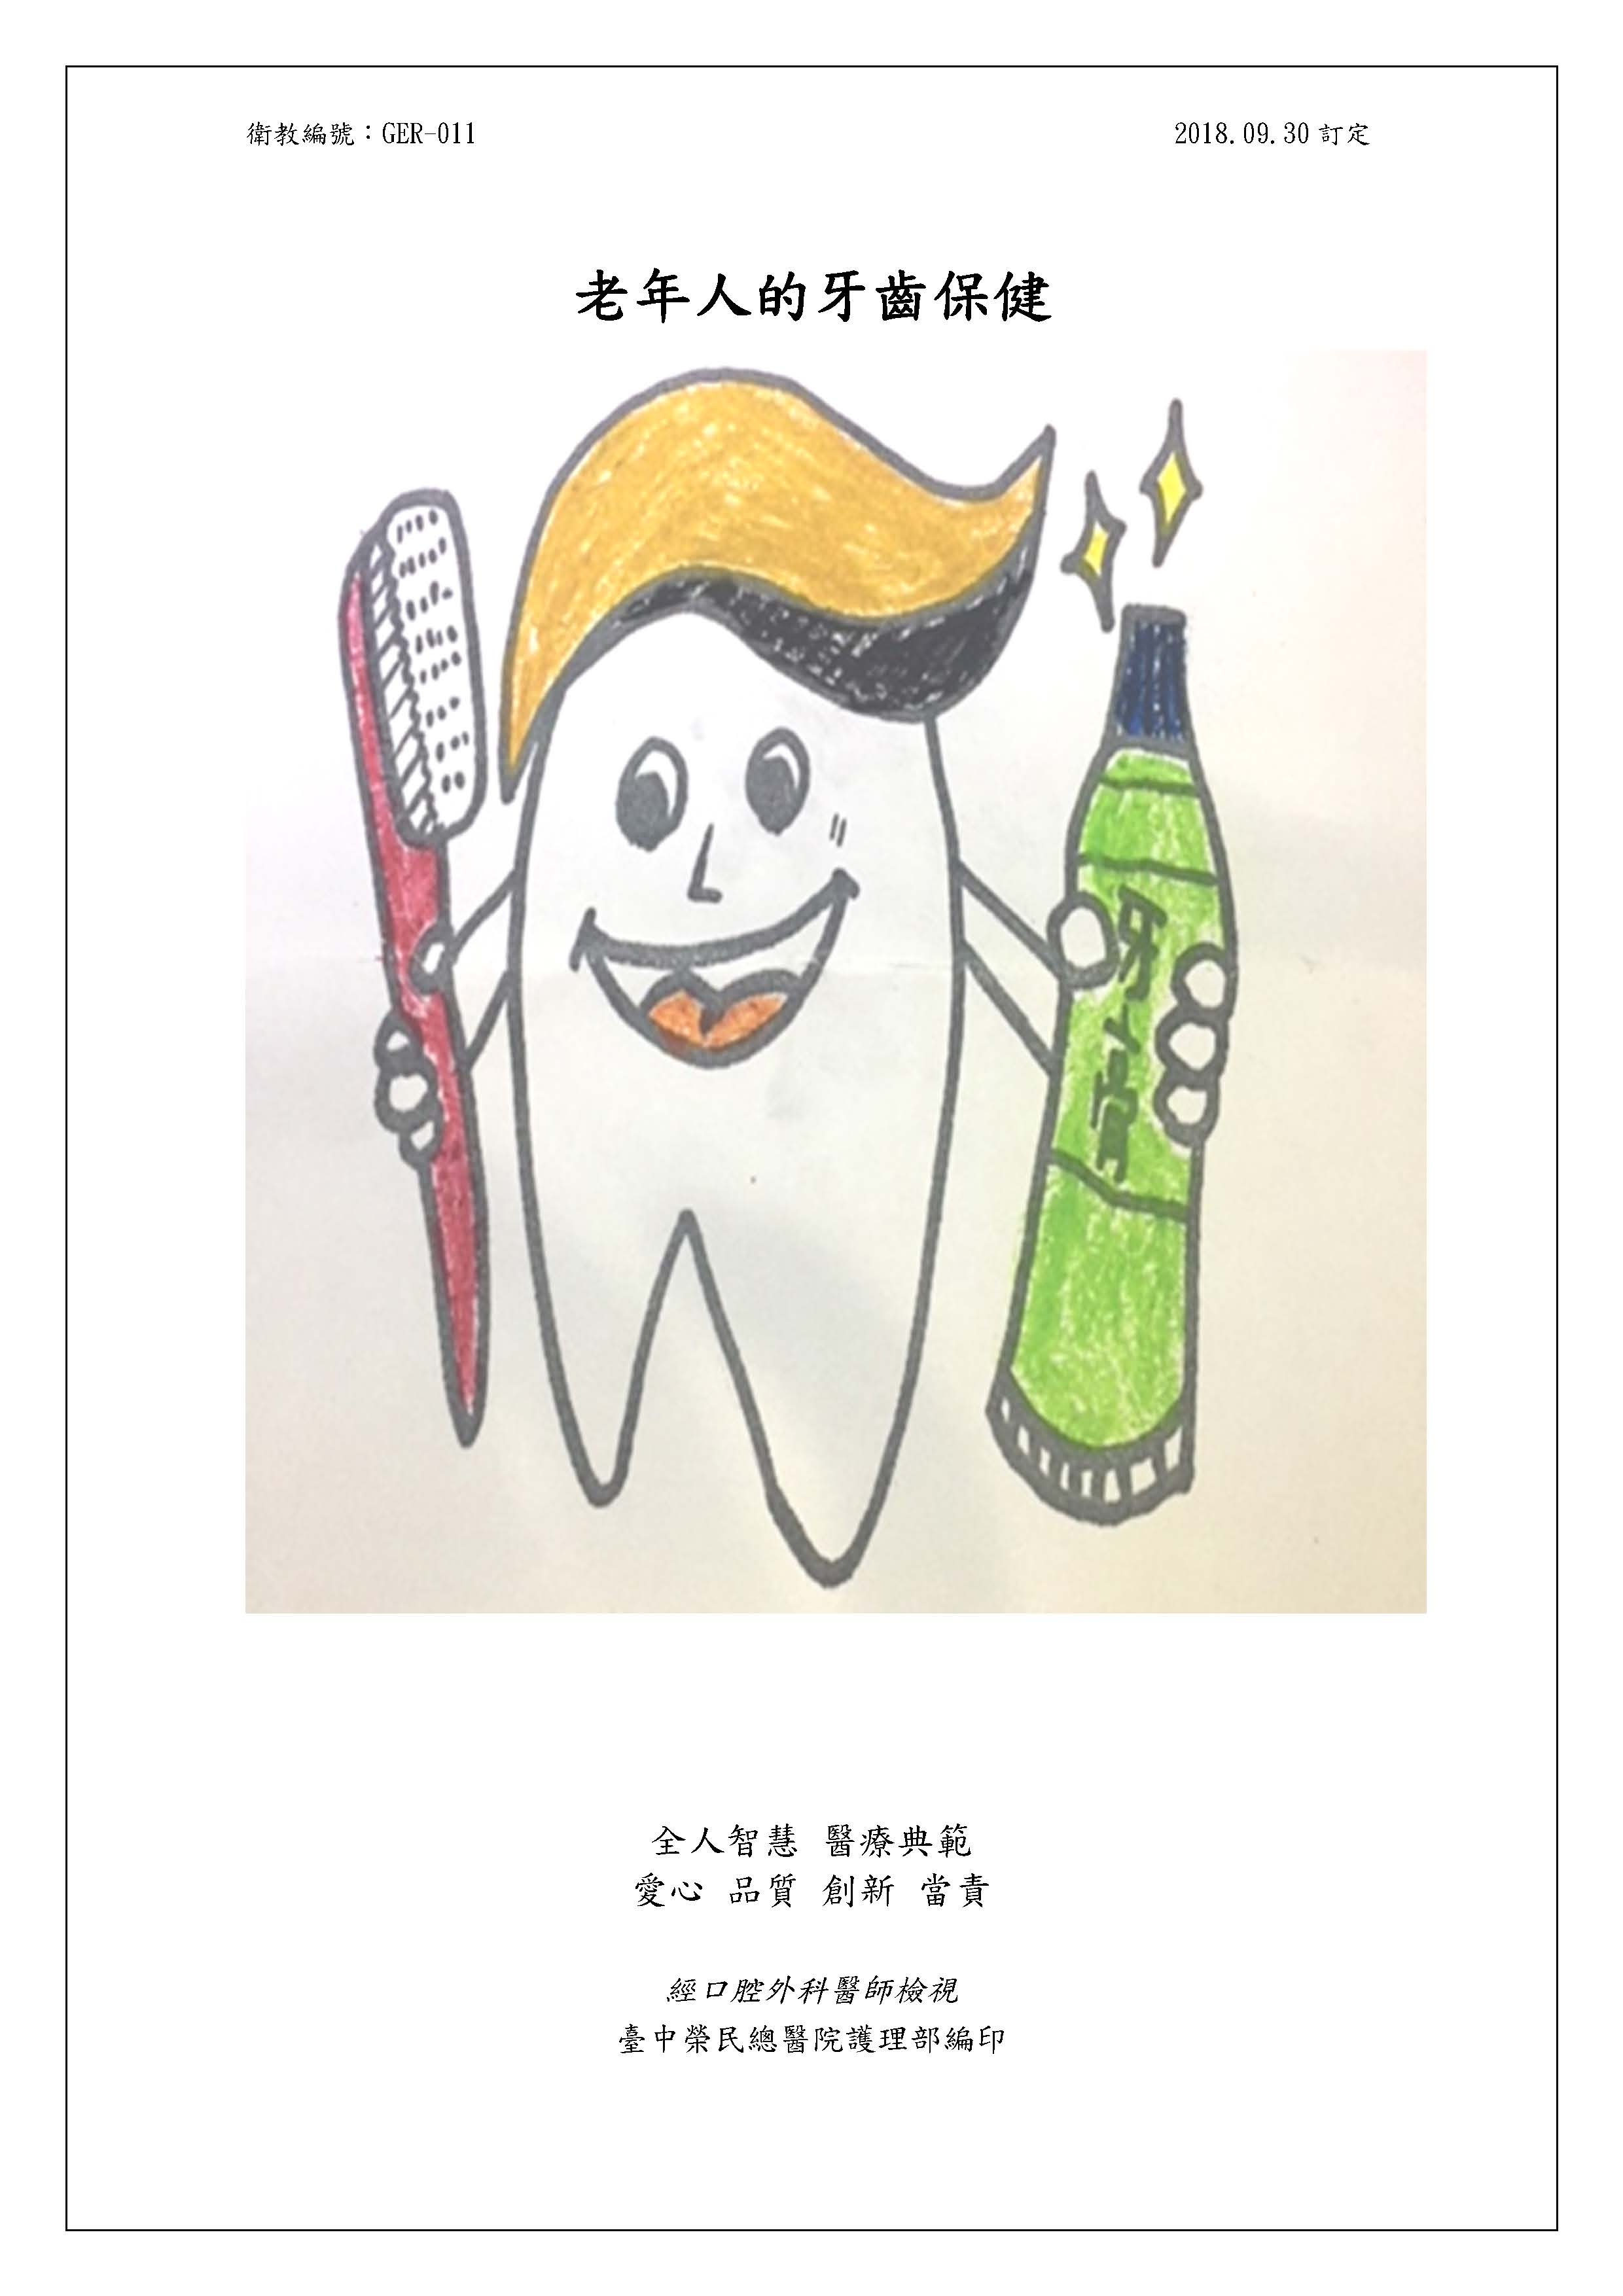 老年人的牙齒保健衛教單張文章照片